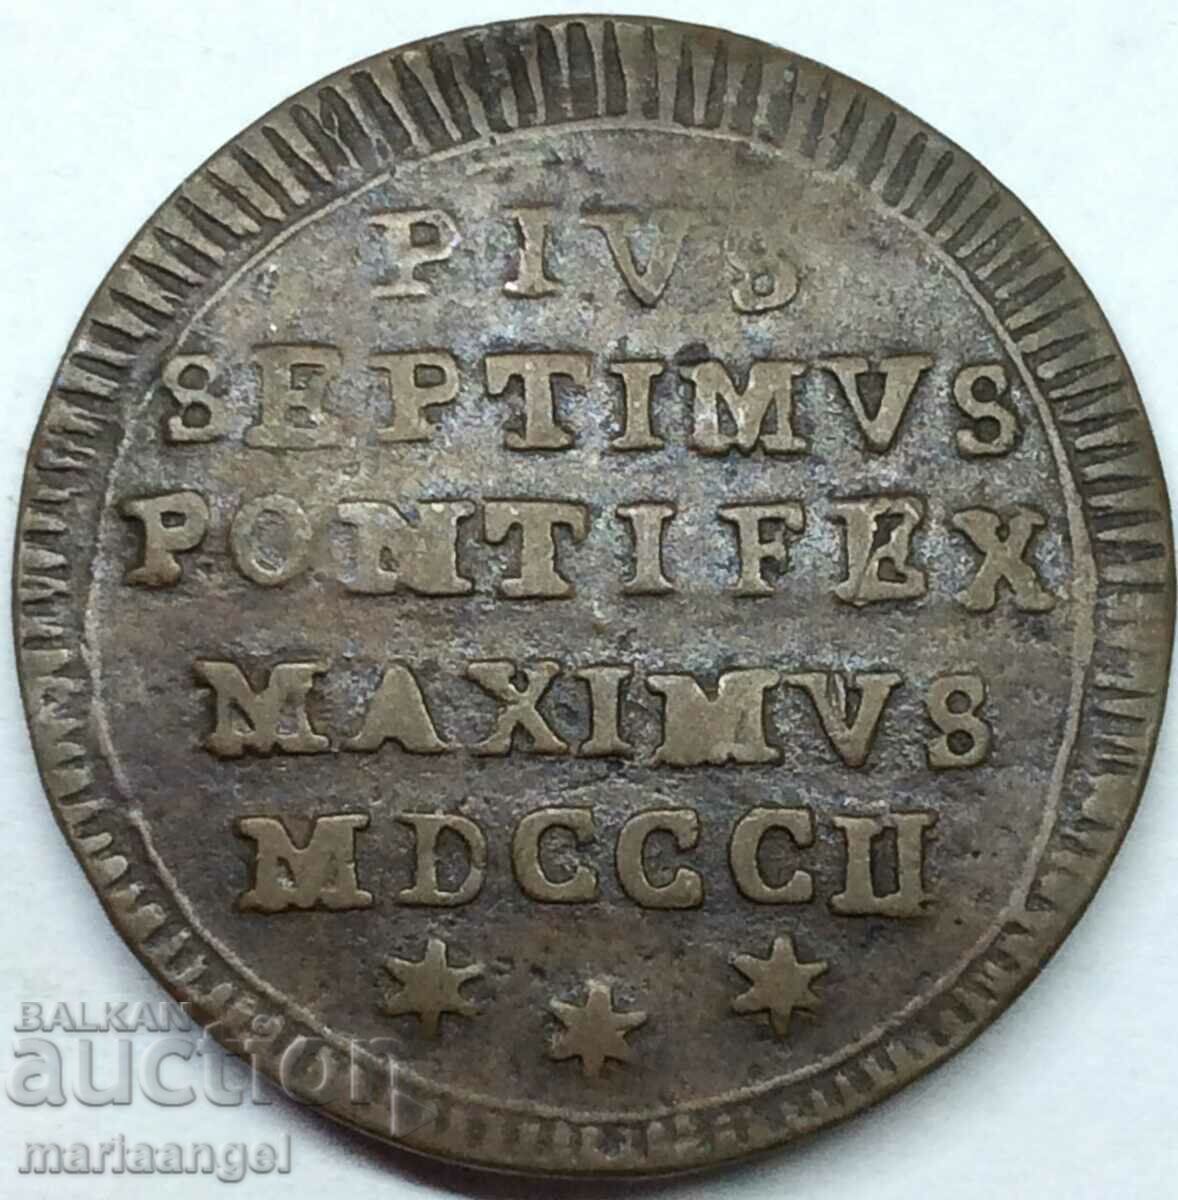 Pius VII 1/2 mezzo bayocco 1802 Vatican Rome 5.47g 27mm - rare